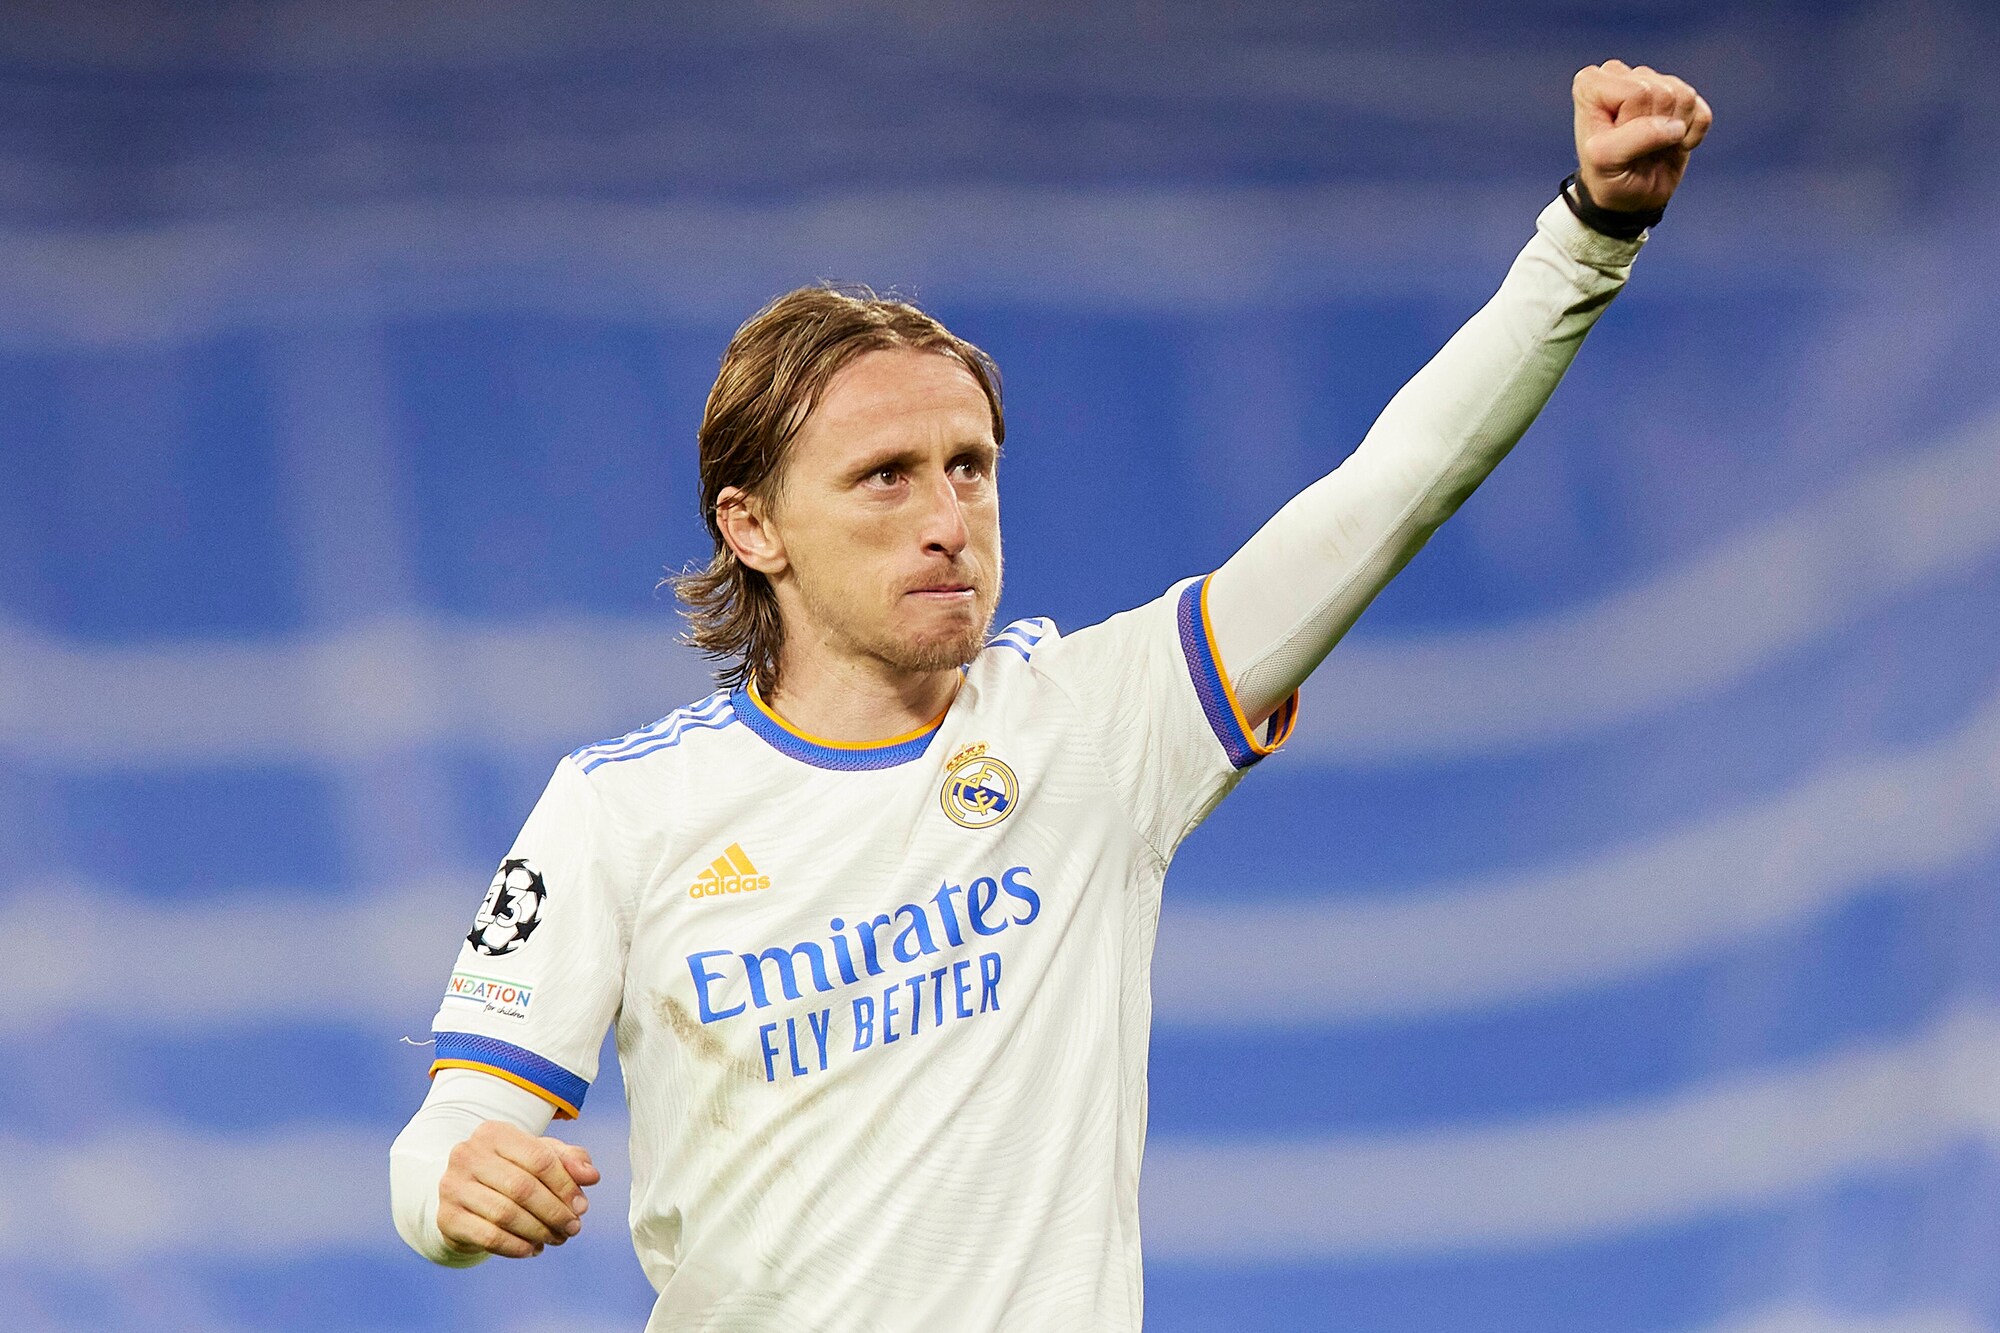 “La preoccupazione cresce al Real Madrid in vista della sfida contro il City: la tenuta difensiva e le condizioni di Modric al centro dell’attenzione”